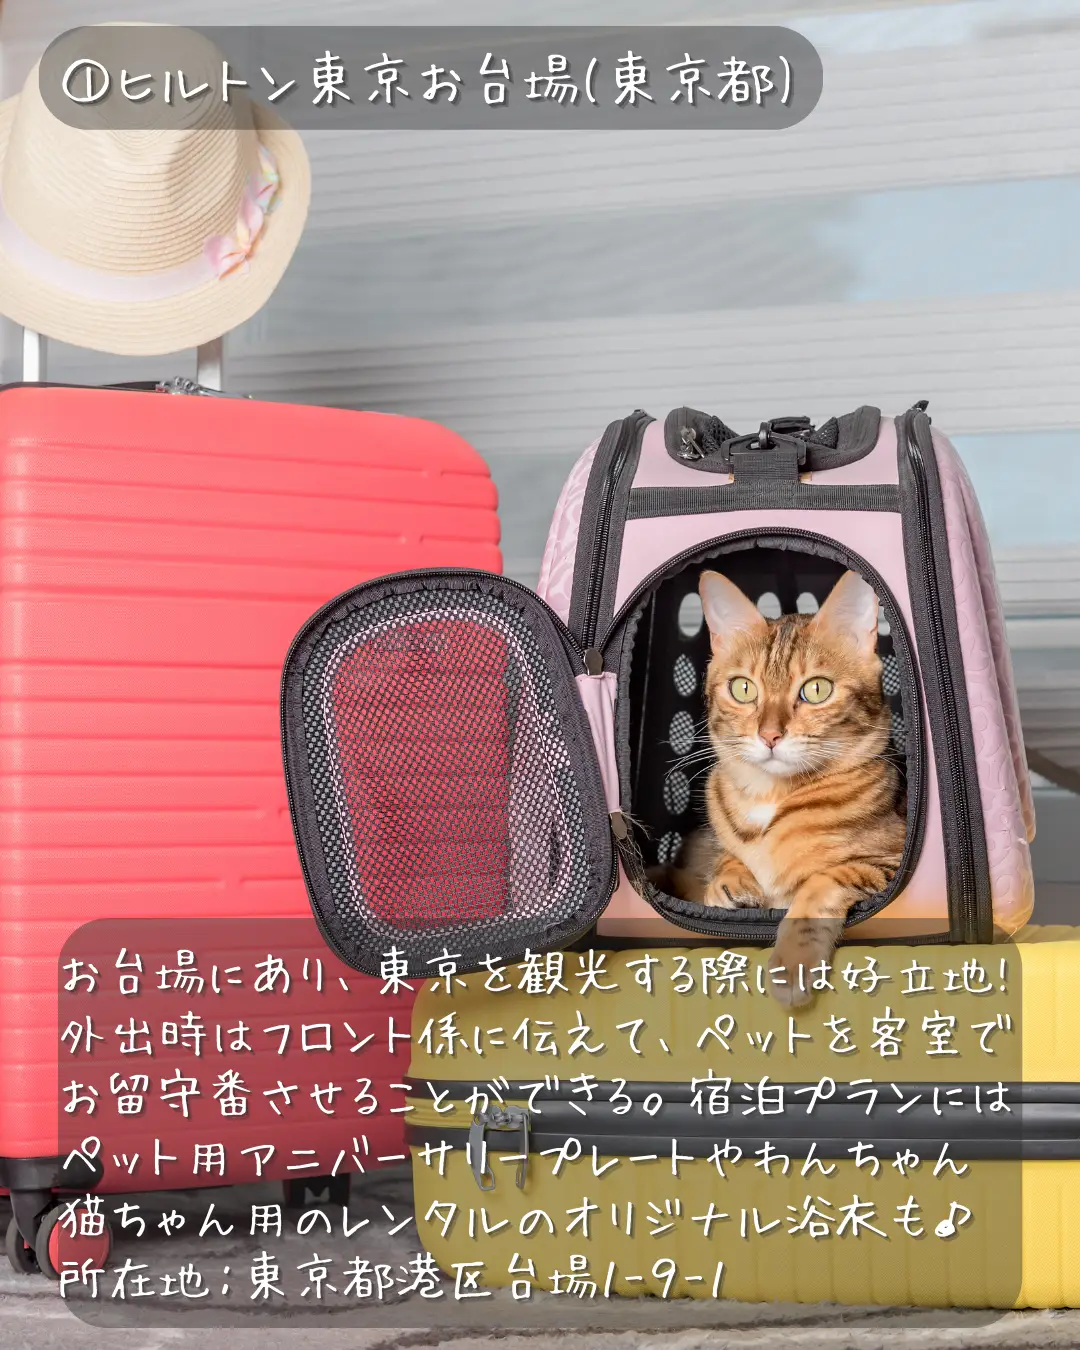 猫好き 旅行 - Lemon8検索